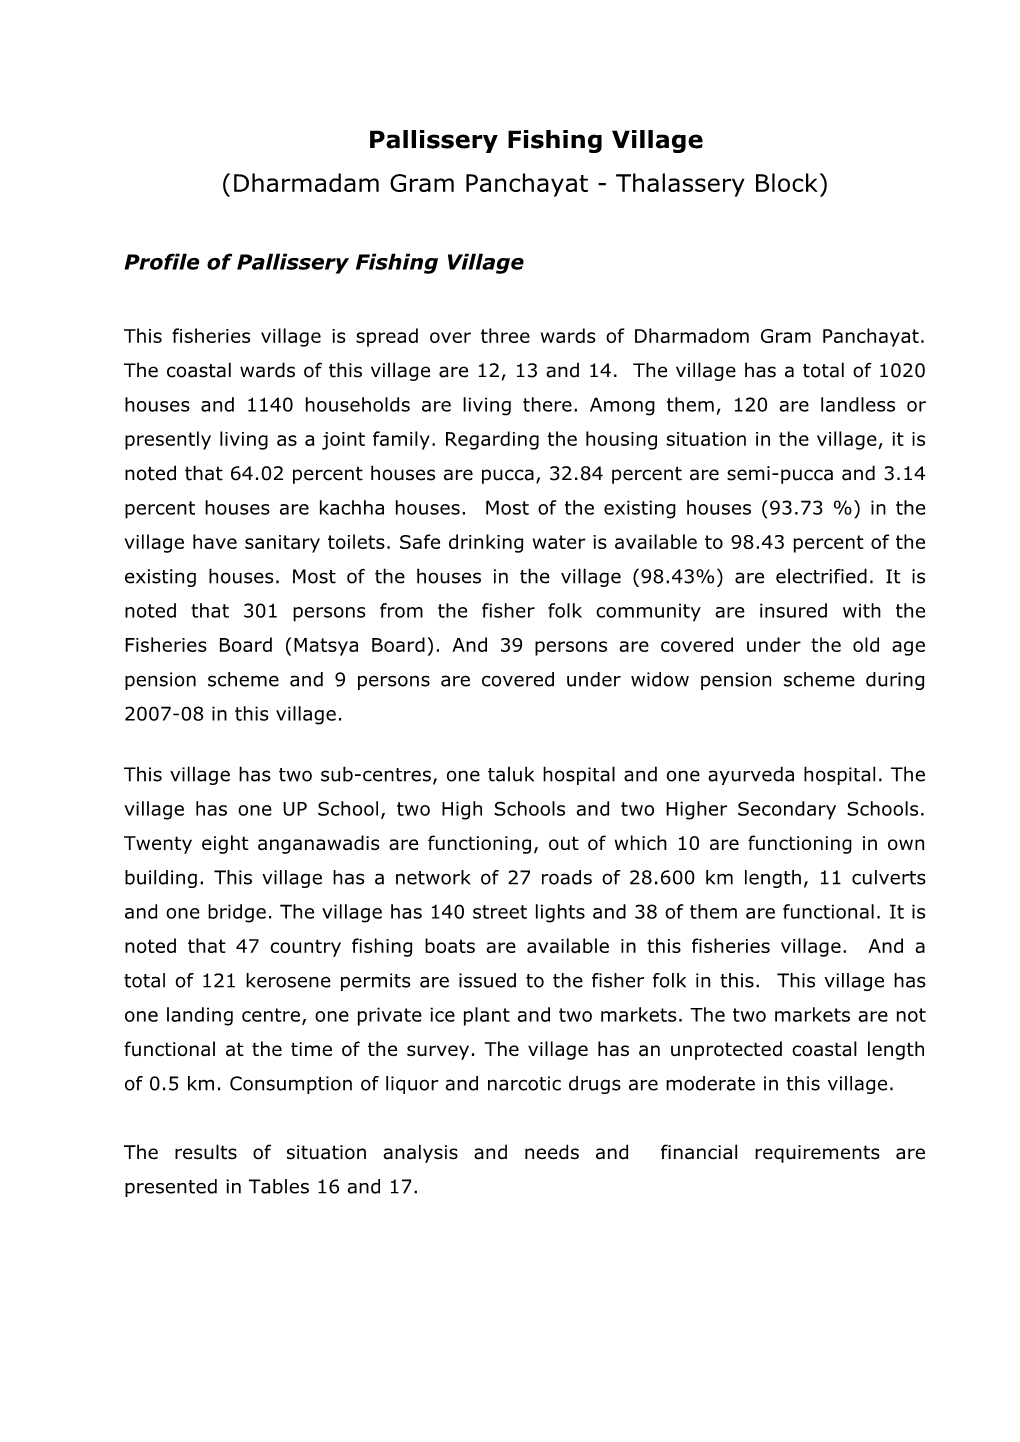 Pallissery Fishing Village (Dharmadam Gram Panchayat - Thalassery Block)